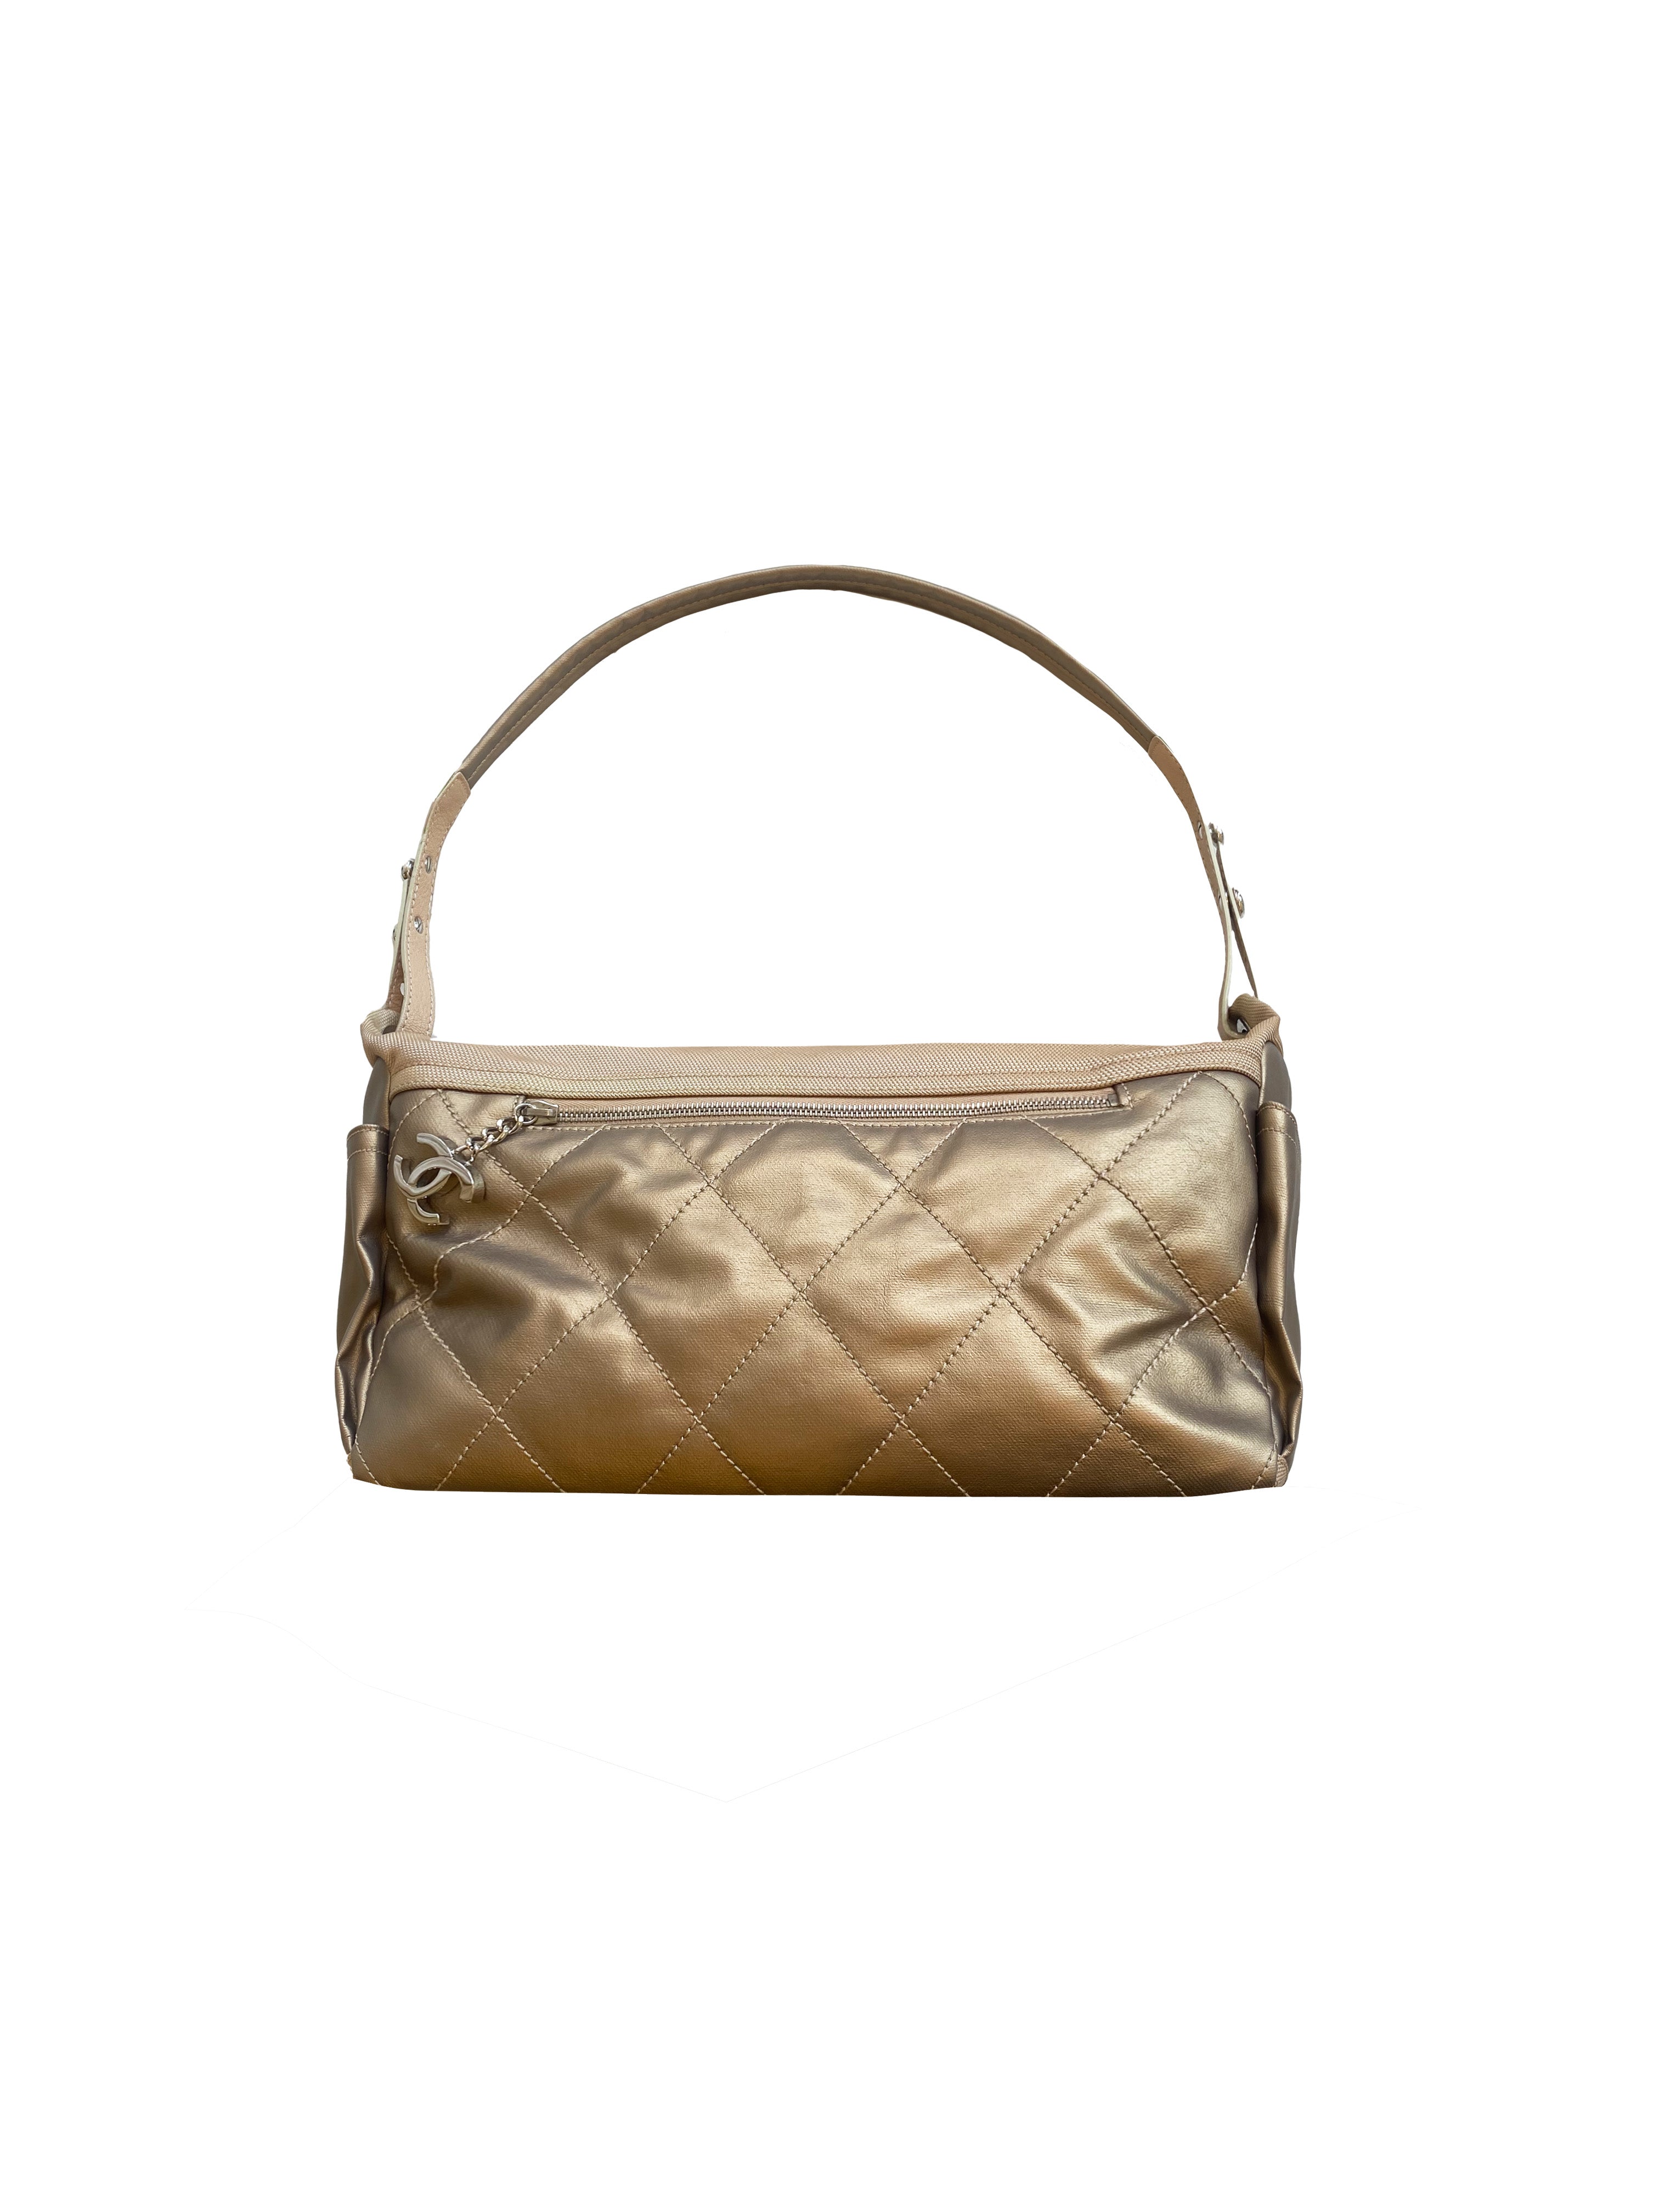 Chanel 2006 Bronze Large Shoulder Bag · INTO